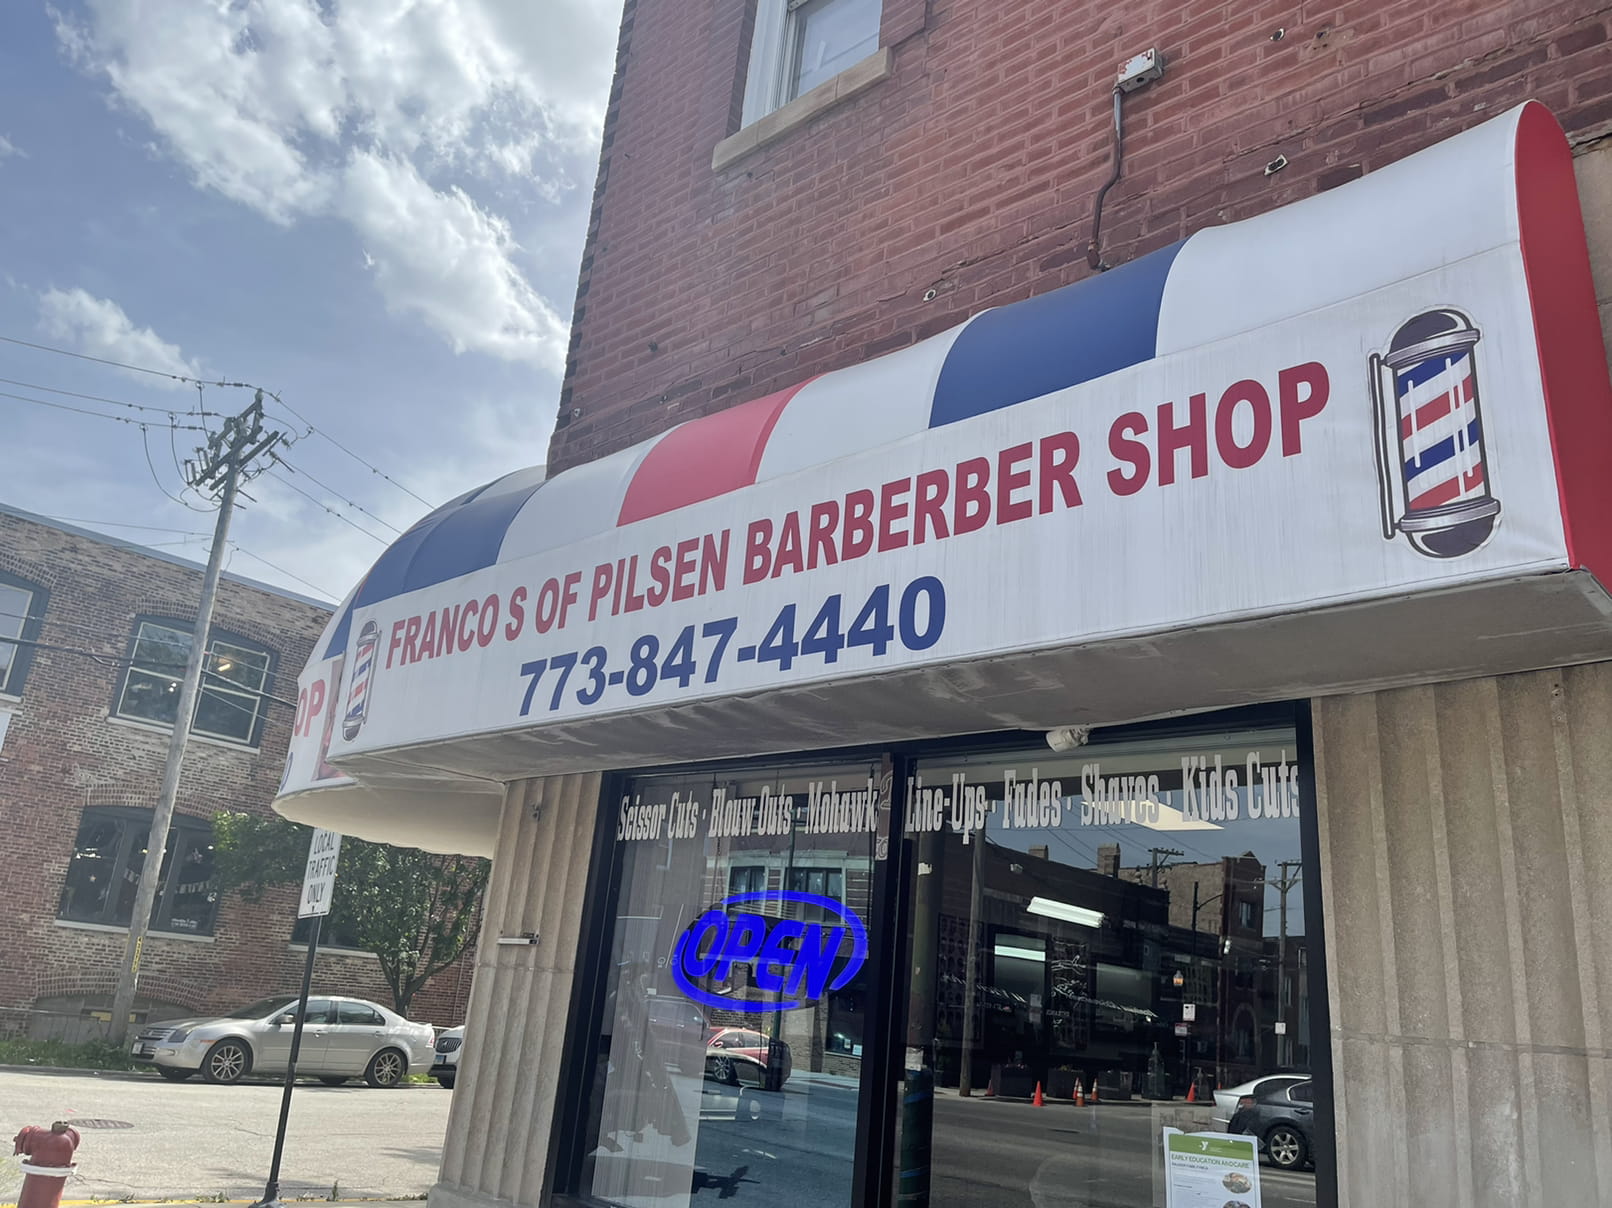 Barberber shop